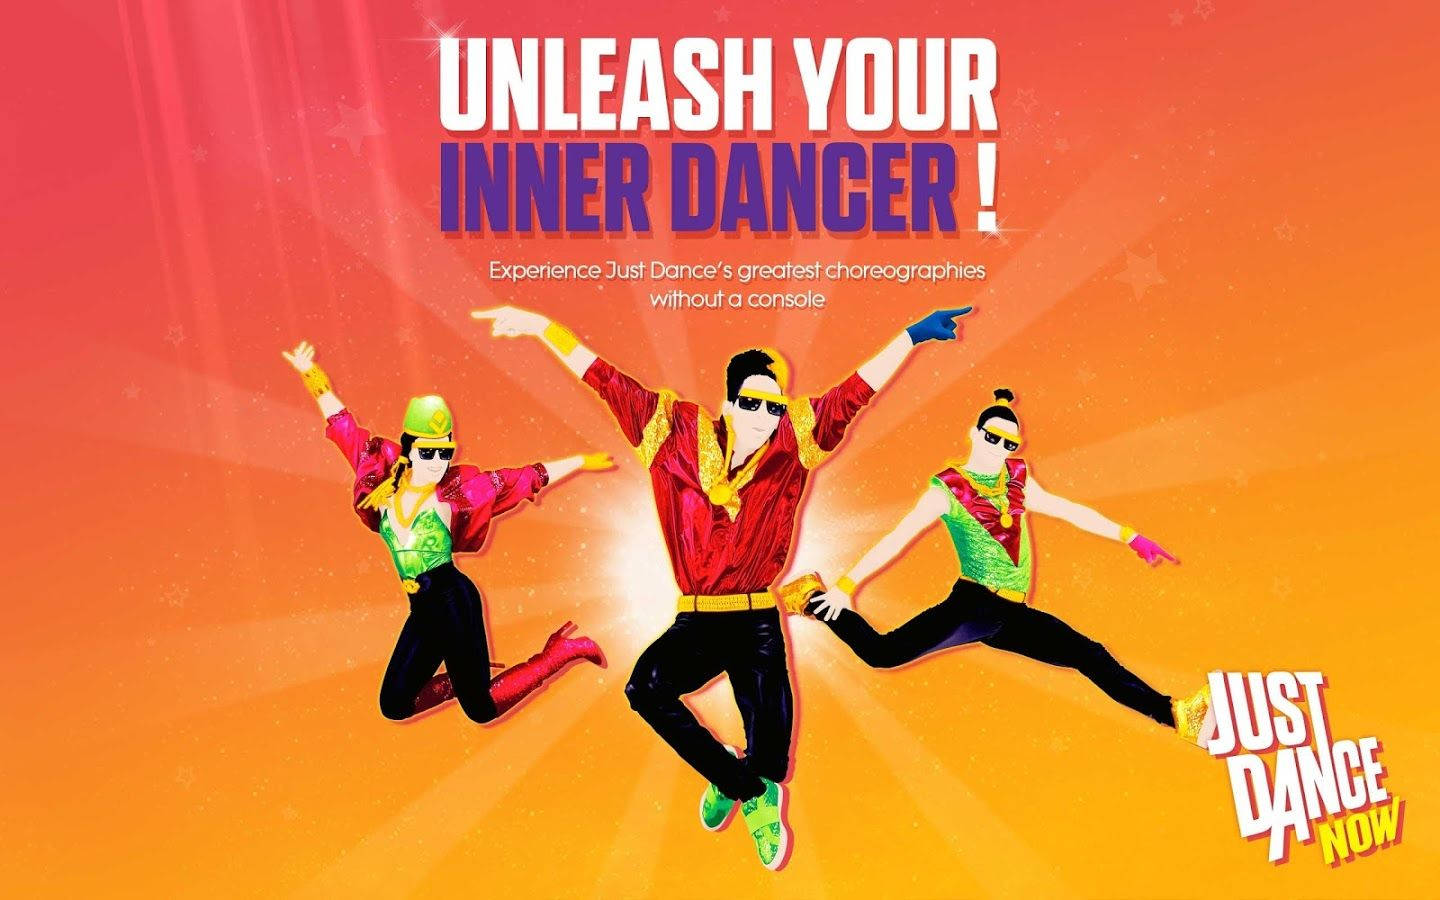 Slip din indre danser løs nu med Just Dance! Wallpaper